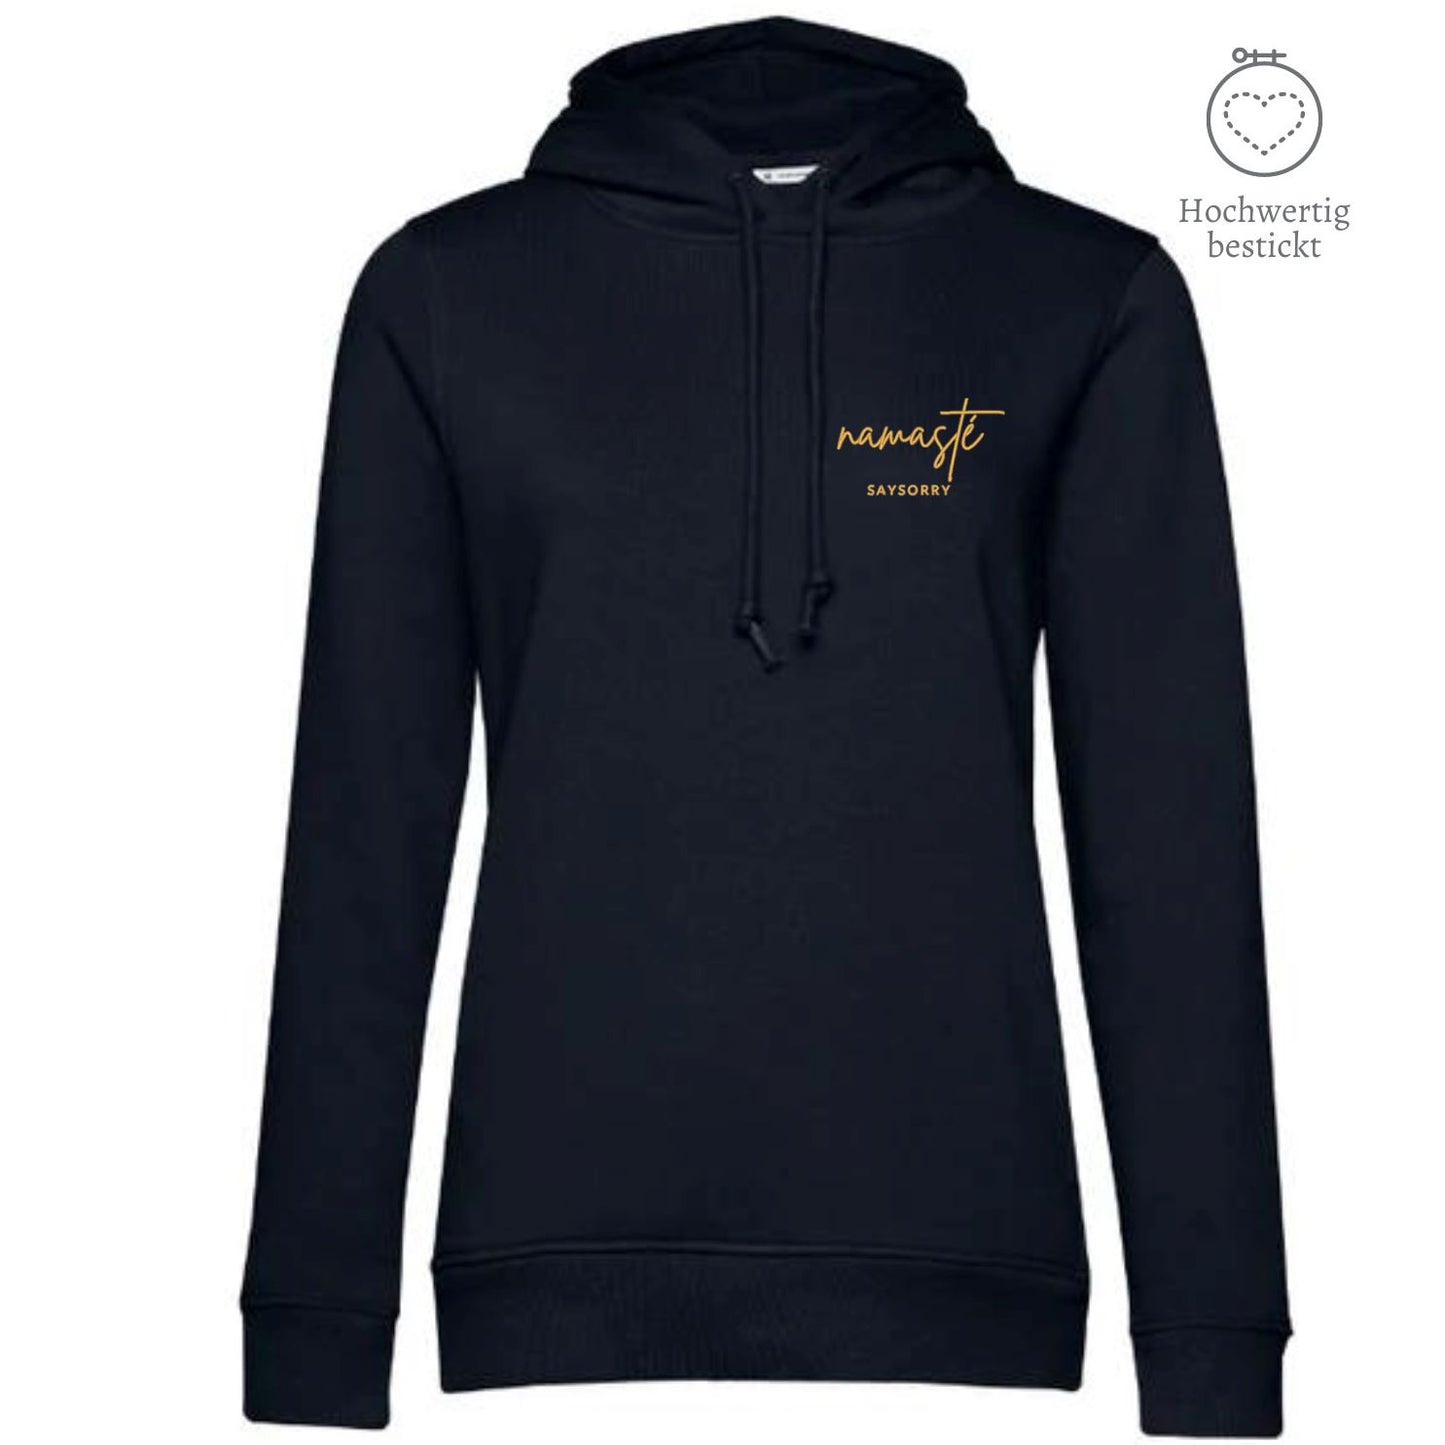 Organic & recycelter Damen Hoodie »Namasté in Gold« hochwertig bestickt Shirt SAYSORRY Black Pure XS 